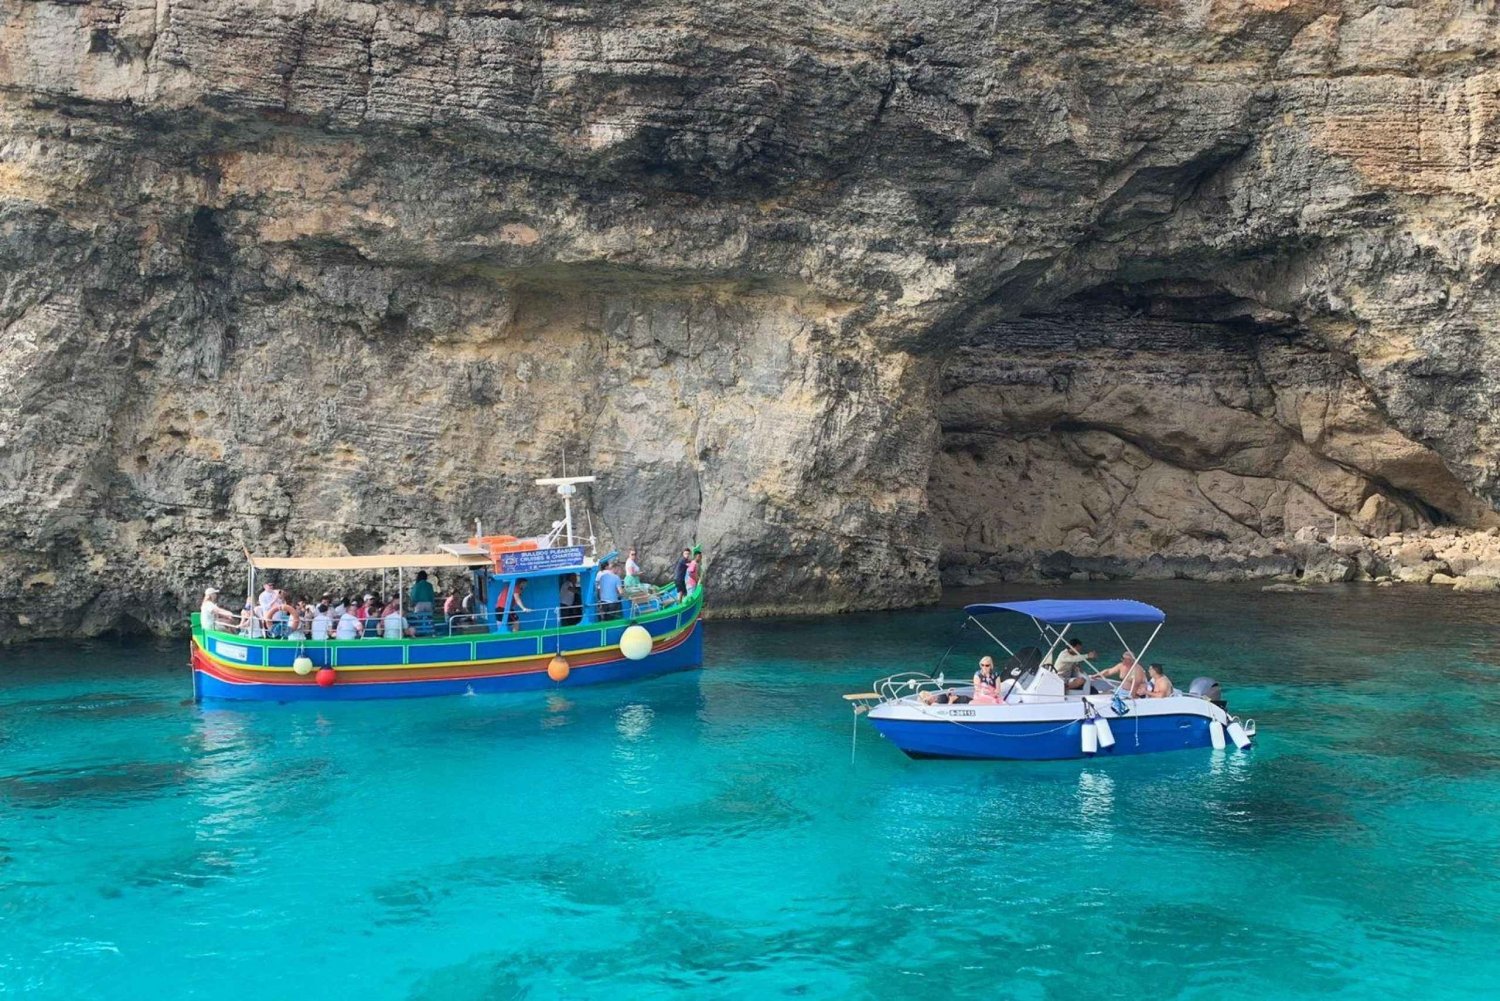 Full day private charter around Comino, Gozo & Malta